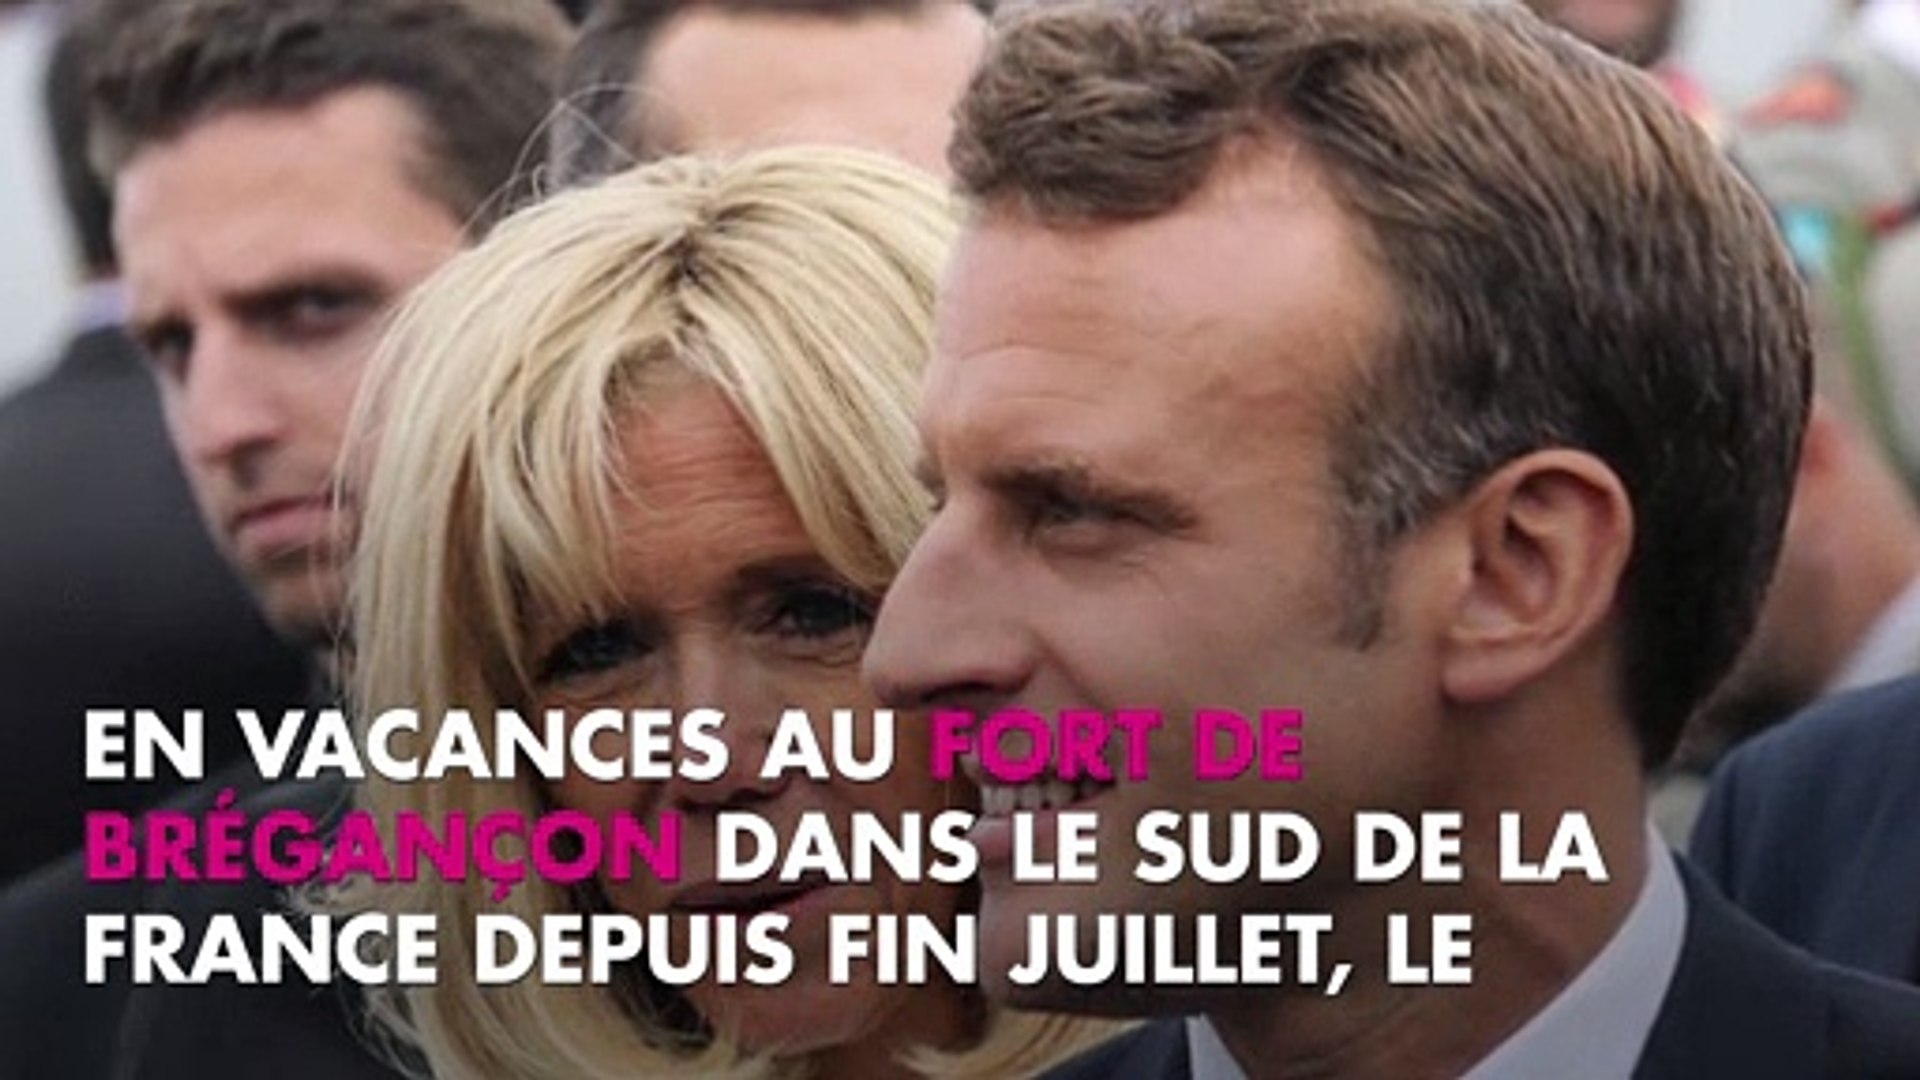 Brigitte Macron blessée : pourquoi est-elle apparue avec le bras en écharpe  ? - Vidéo Dailymotion